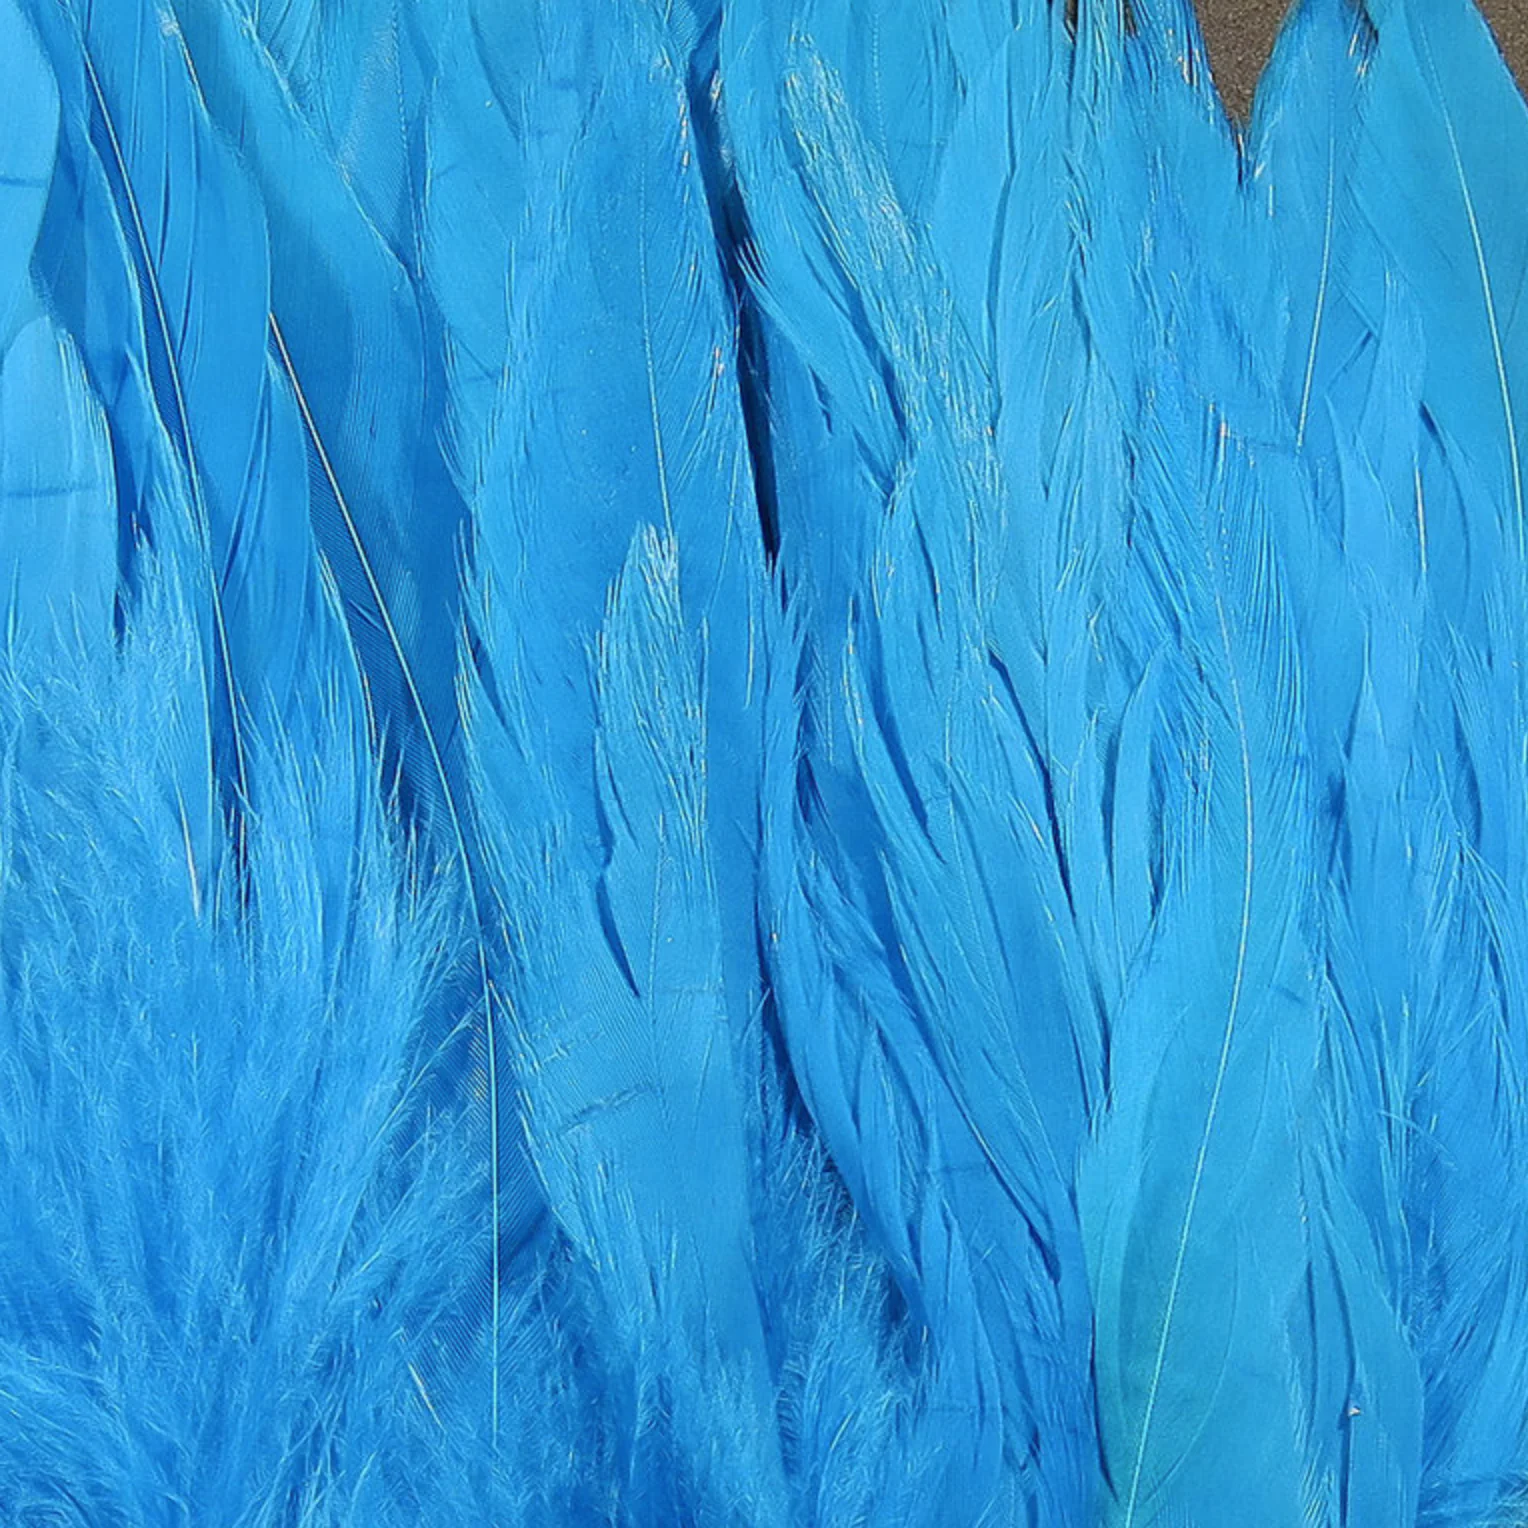 Schlappen 5-7" - Kingfisher Blue